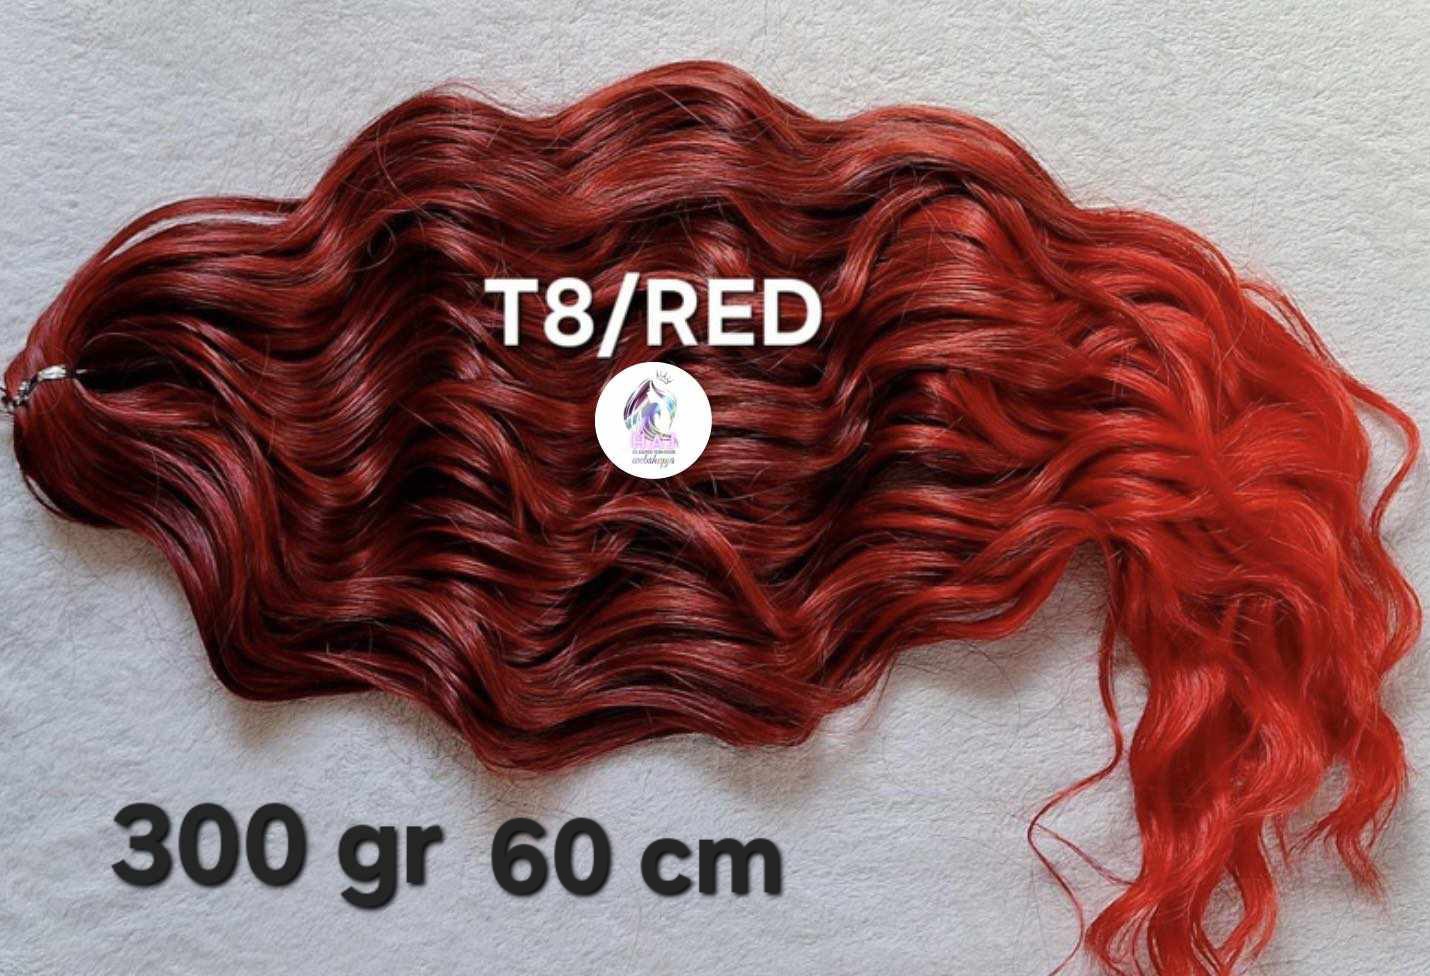 T8/RED 300 gr 60 cm - 12.000 Ft